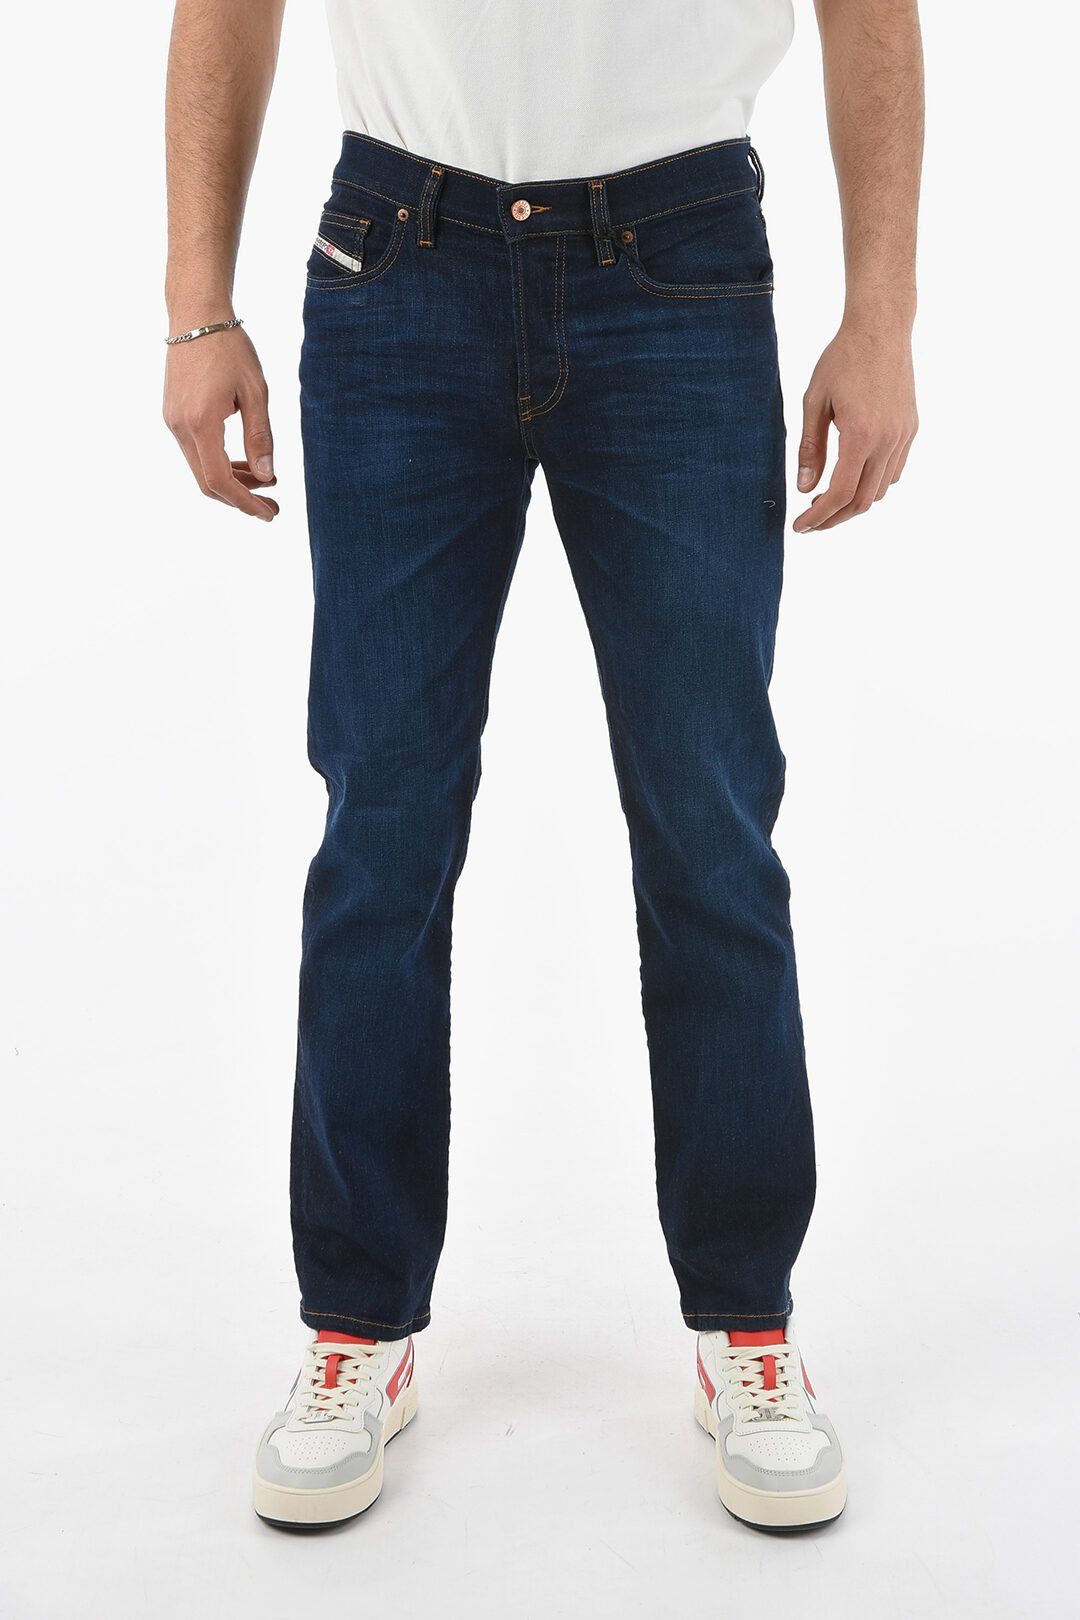 Diesel D-MIHTRY mit Diesel 5-Pocket Style, Straight-Jeans Jeans Herren Stretch-Anteil 0GDAO